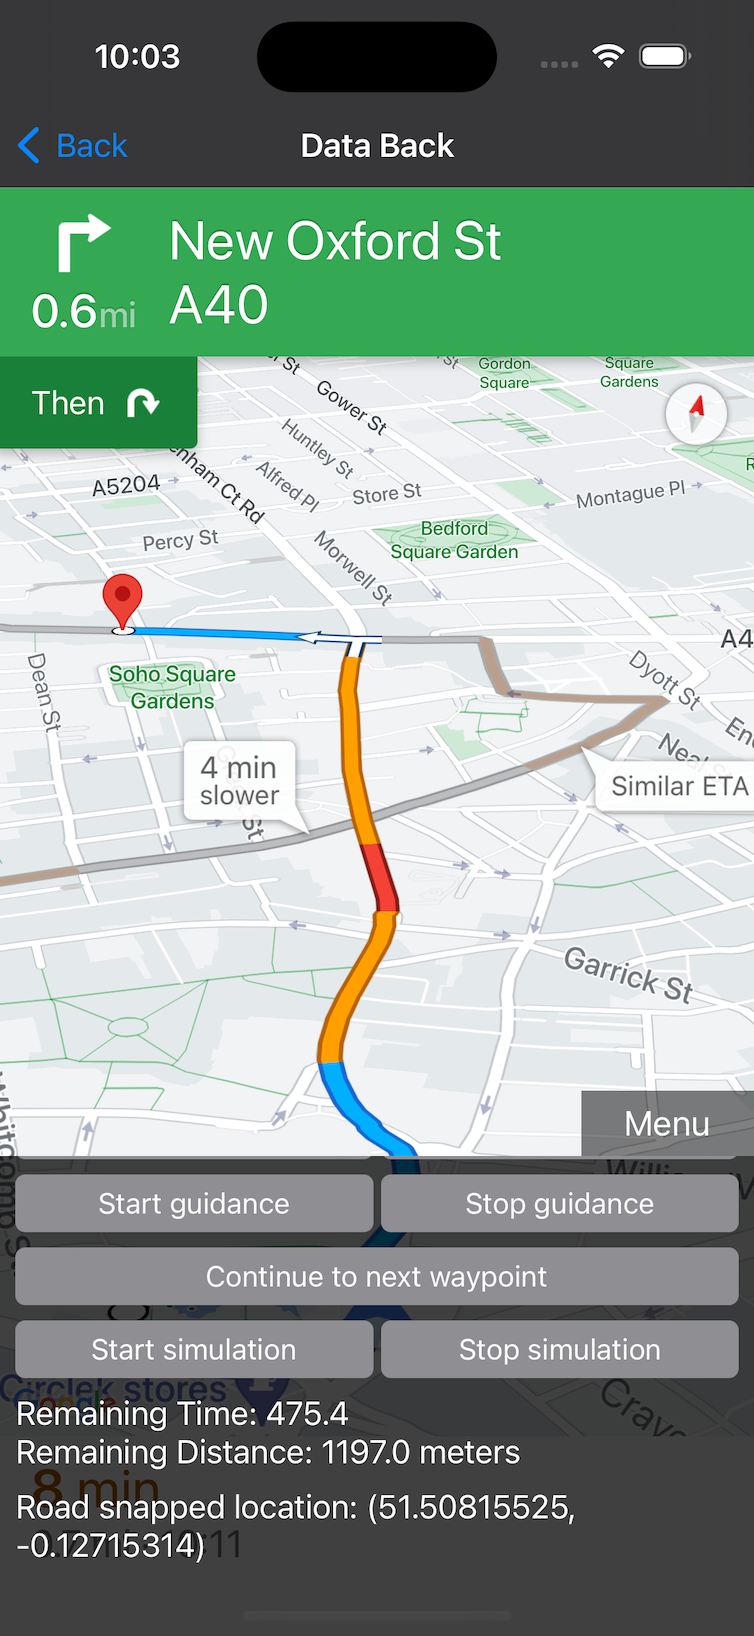 App demo in esecuzione con la visualizzazione mappa visibile.